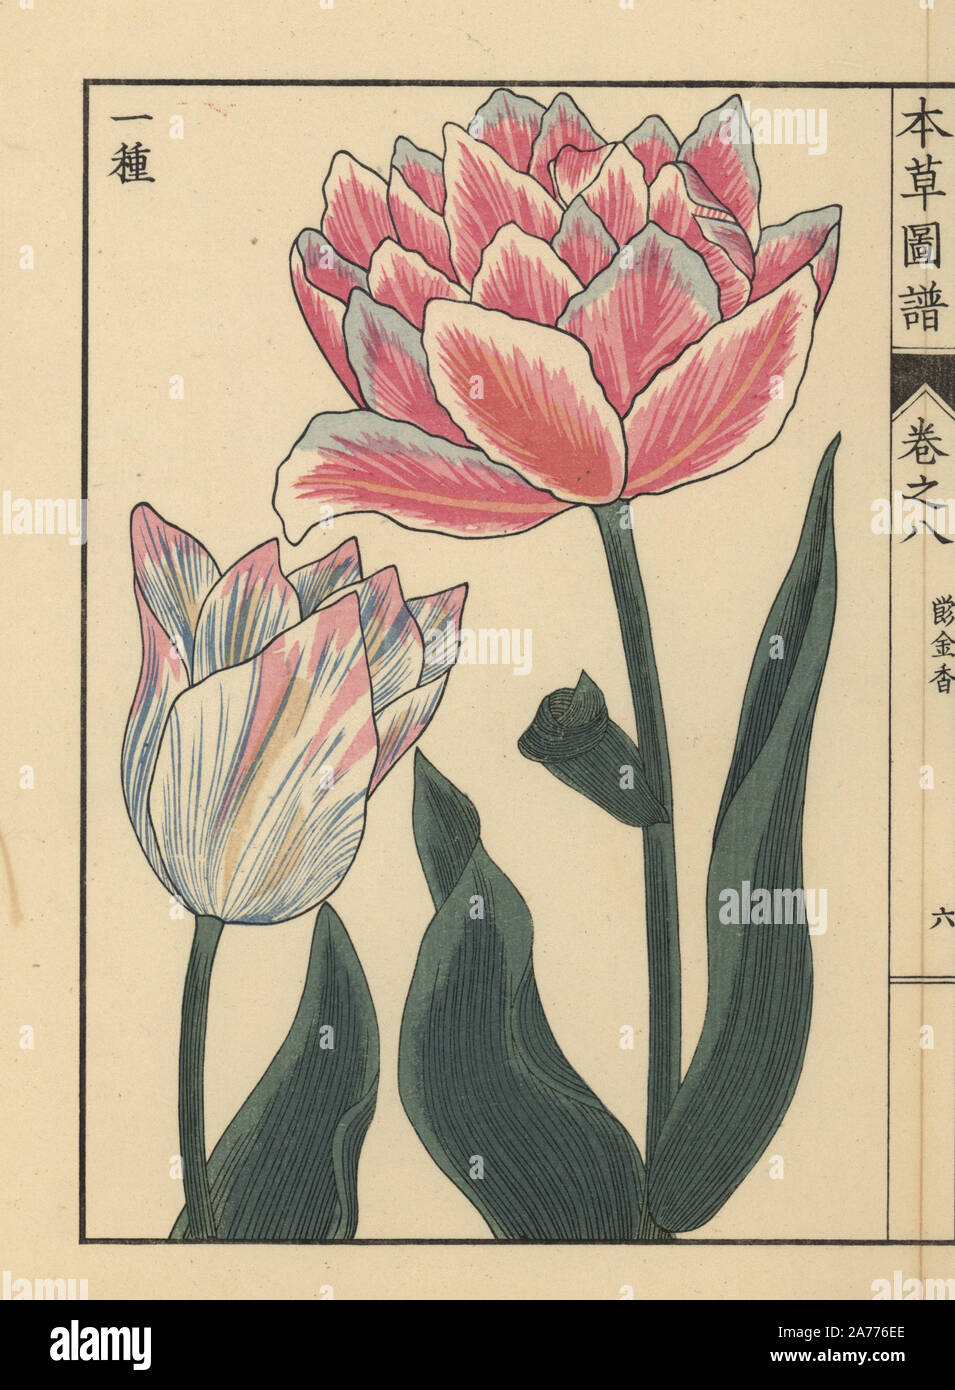 Tulip, Tulipa L. gesneria flore pleno. Stampato a colori woodblock incisione di Kan'en Iwasaki da 'Honzo Zufu", una guida illustrata per piante medicinali, Giappone, 1884. La Iwasaki (1786-1842) era un giapponese botanico, entomologo e zoologo. Egli è stato uno dei primi botanici giapponesi per incorporare la conoscenza occidentale nei suoi studi. Foto Stock